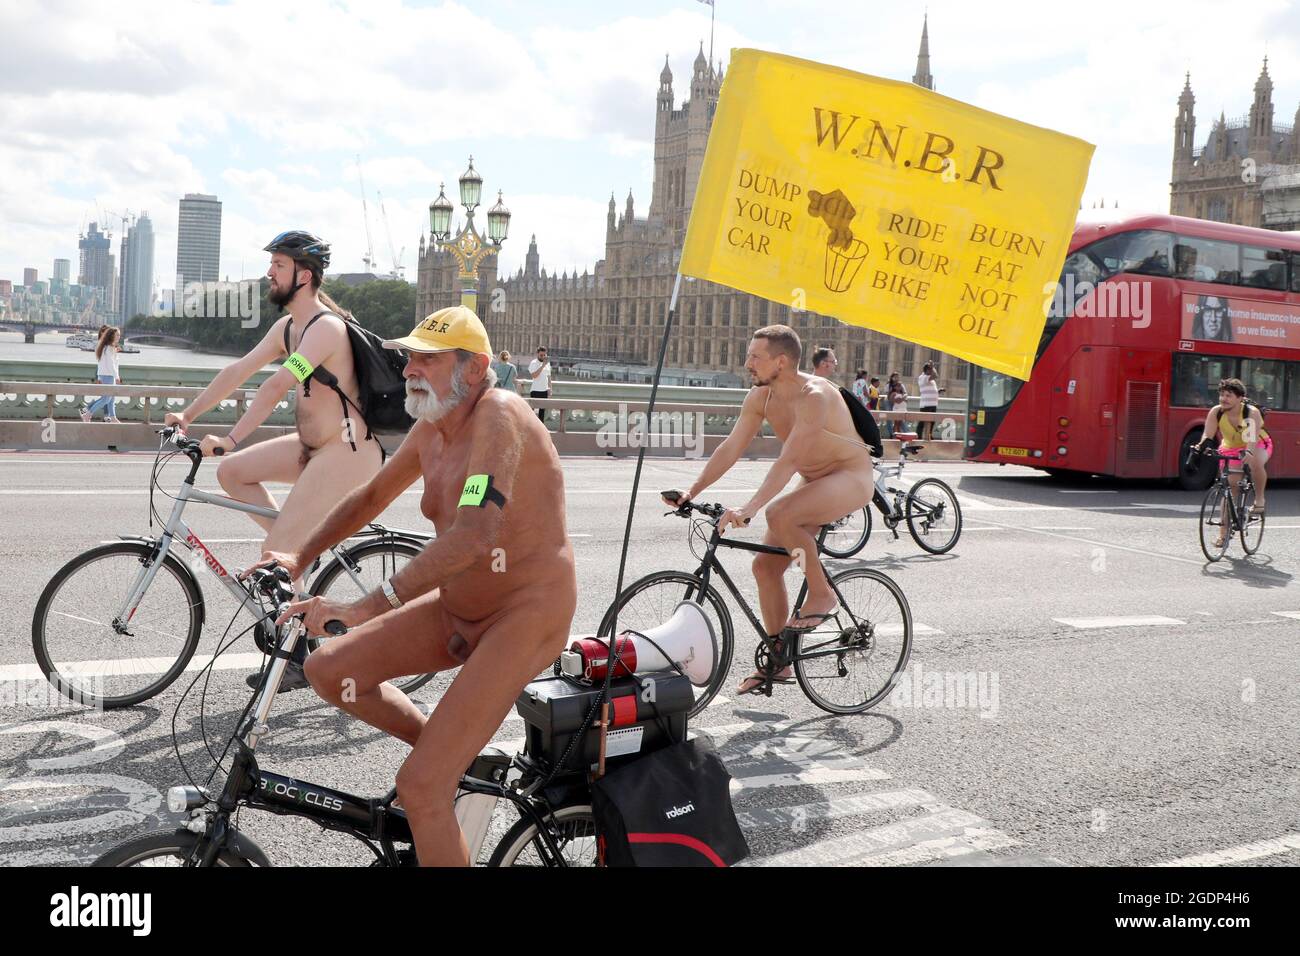 Londres, Royaume-Uni. 14 août 2021. Cyclistes nus prenant part à la World Naked Bike Ride 2021 en traversant le pont de Westminster. Le trajet proteste contre la dépendance au pétrole et soutient l'utilisation de moyens de transport alternatifs. Crédit : Paul Brown/Alay Live News Banque D'Images